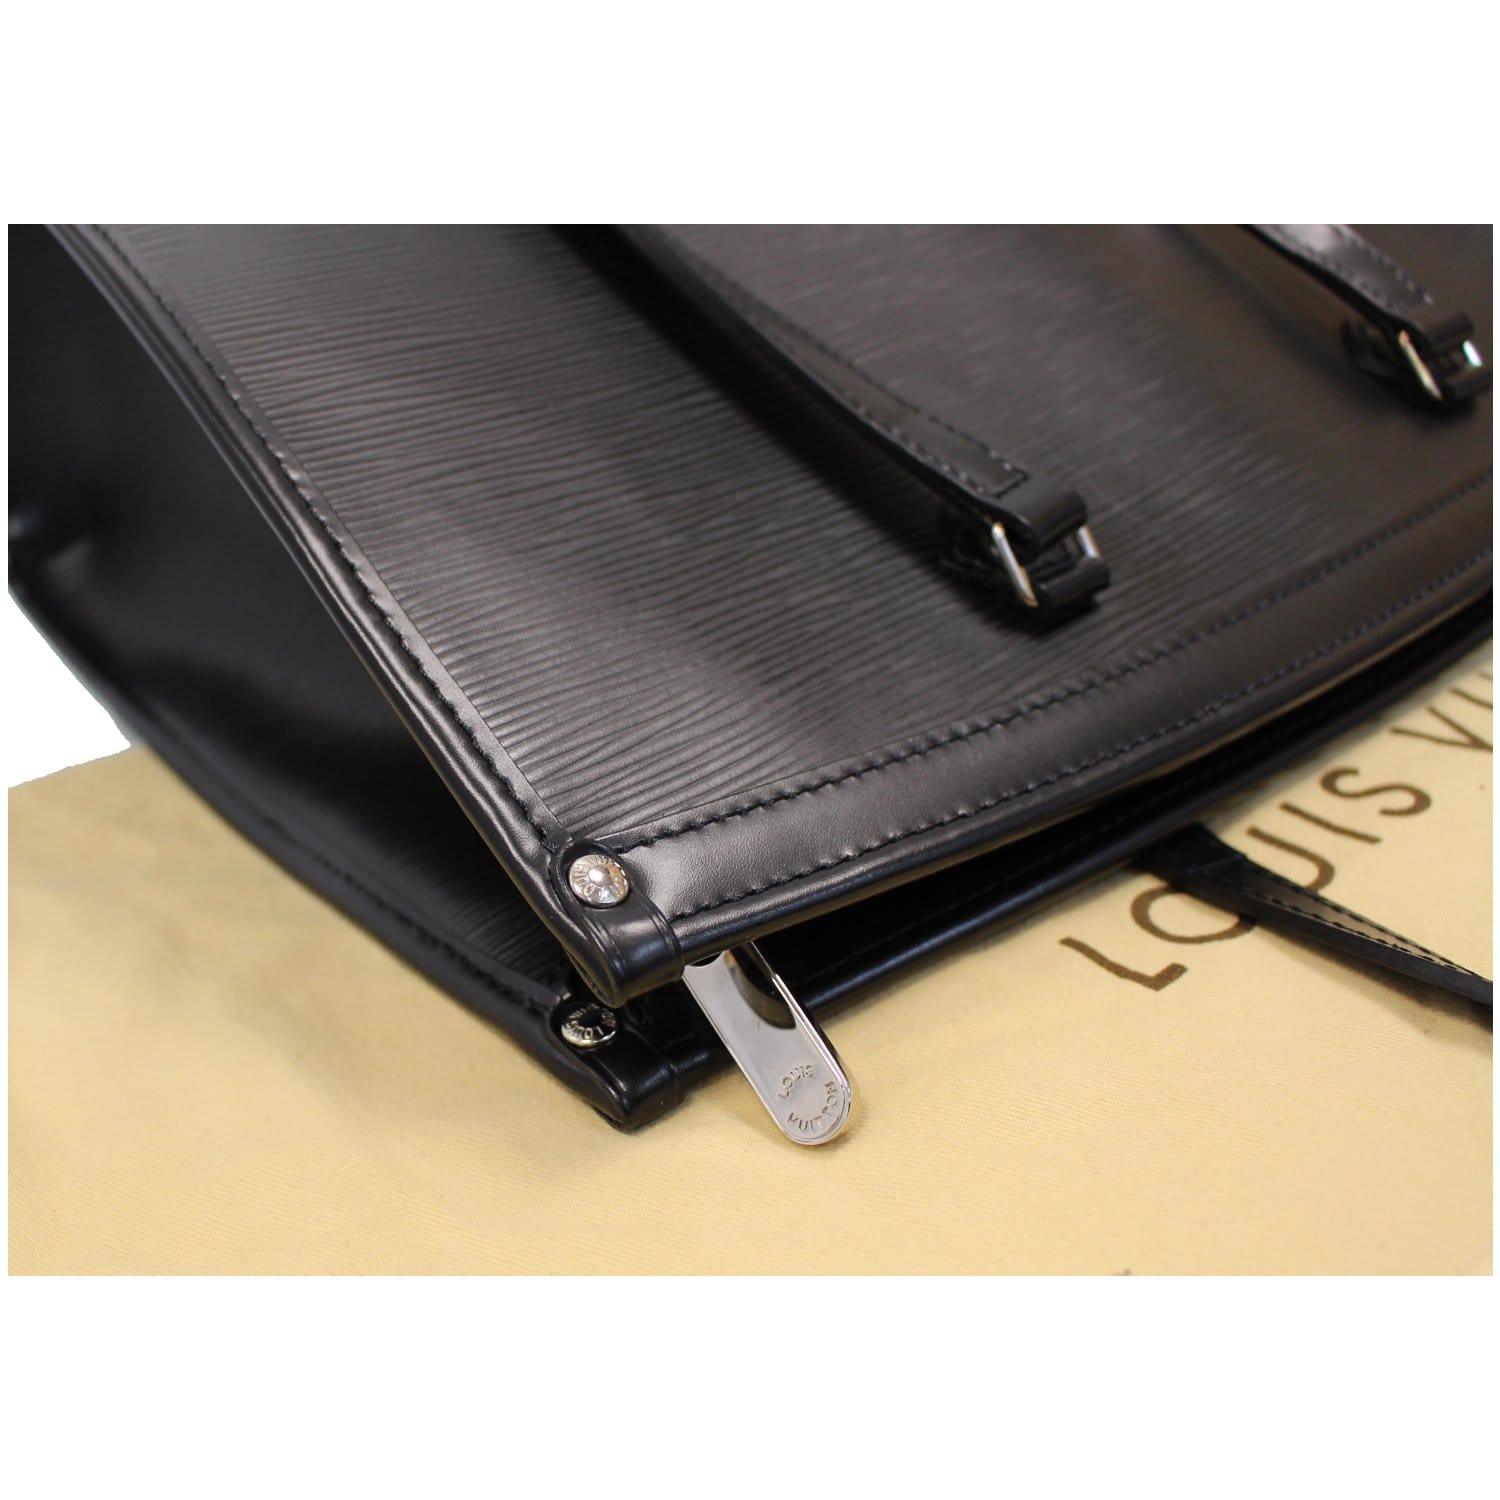 Genuine Louis Vuitton Epi Leather Madeleine GM Large Shoulder Bag